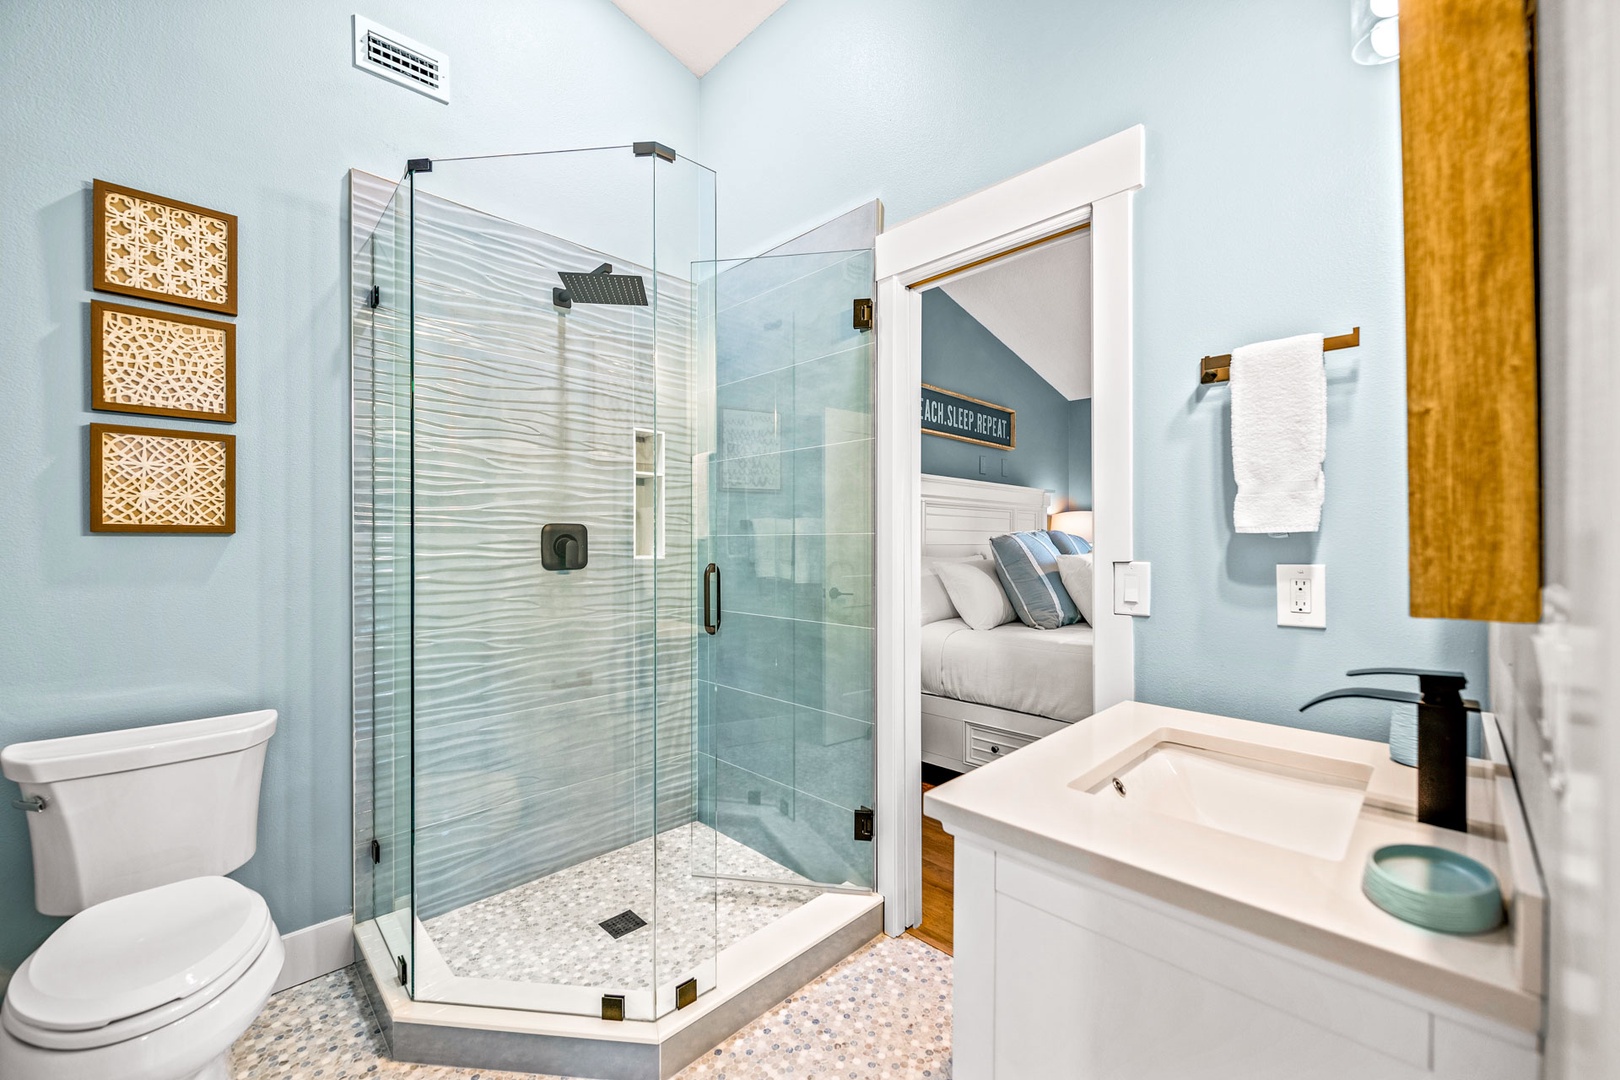 King Bedroom - En Suite Bath